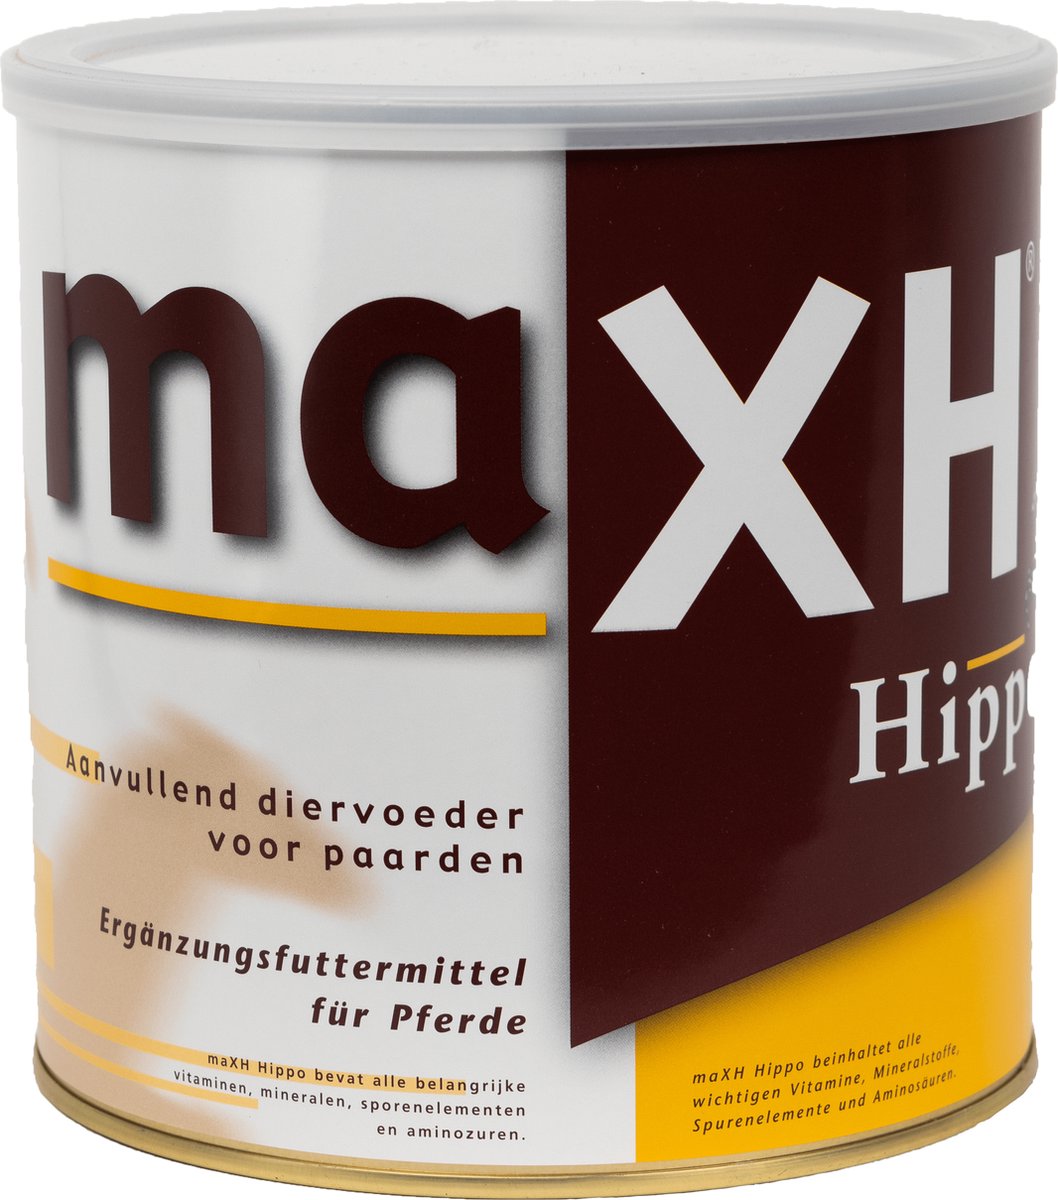 MaxH-Hippo - Paardensupplement - Gezondheid en prestatie voor uw paarden - Vitamines & Mineralen